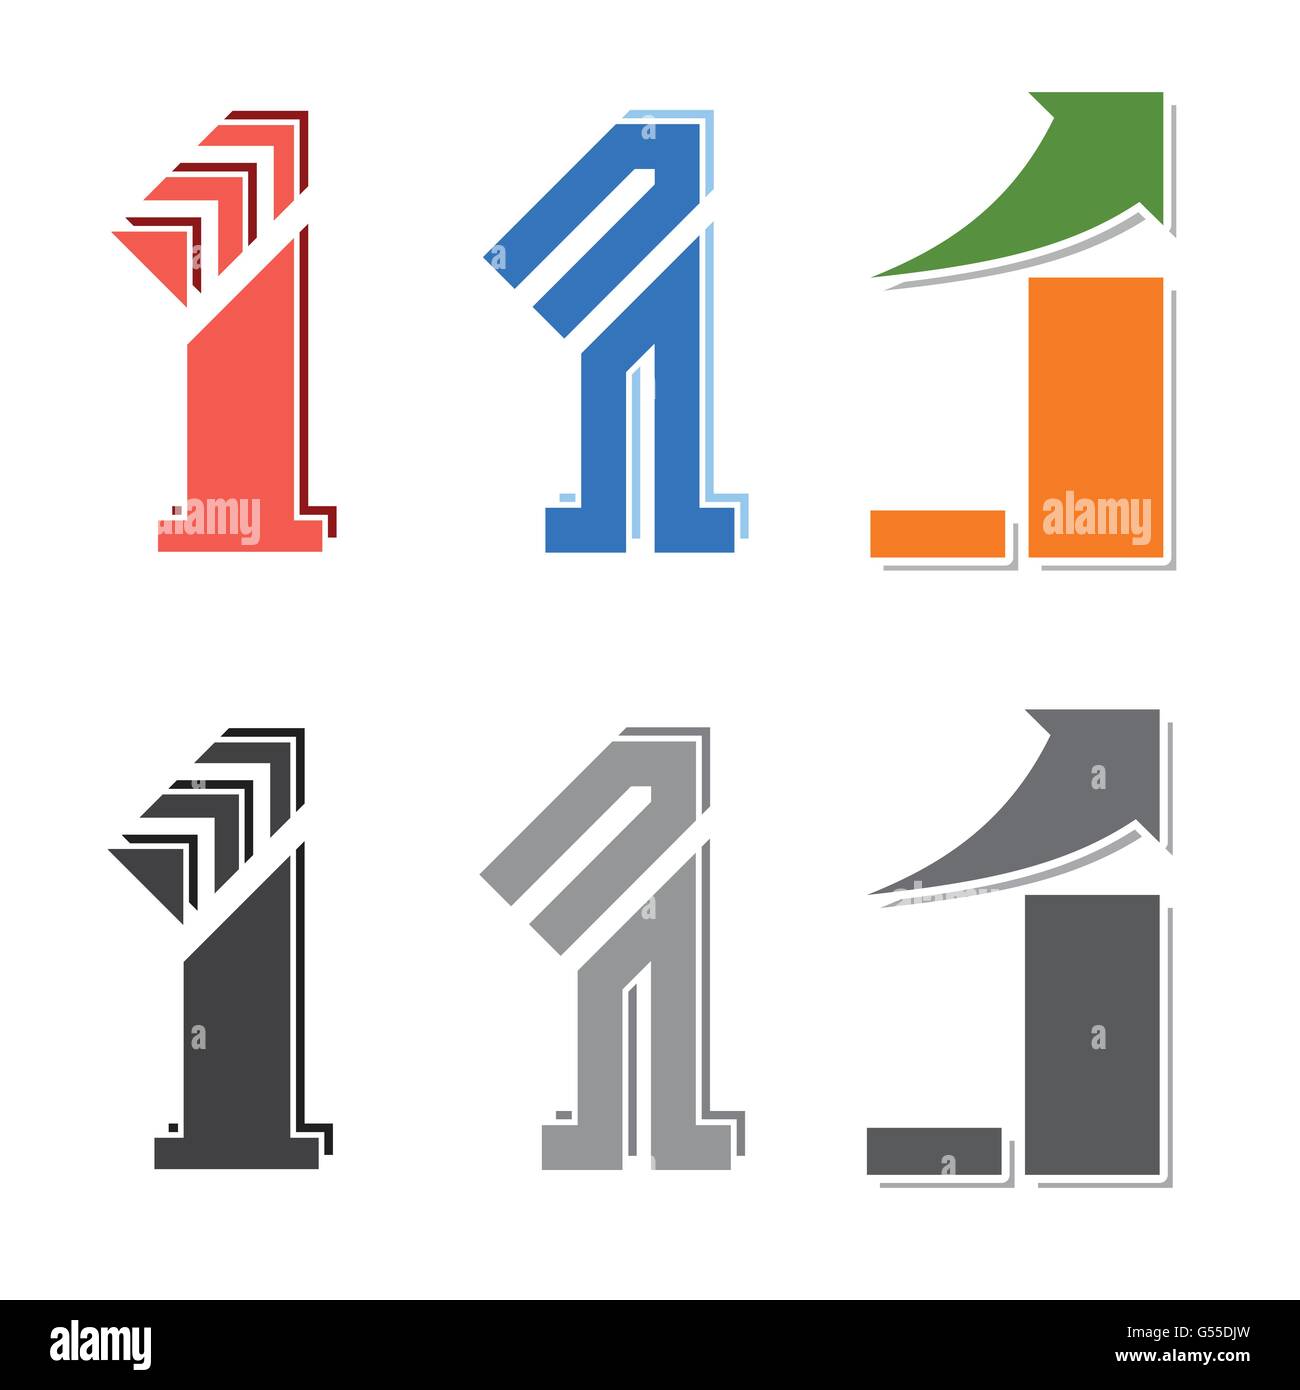 La figure numéro un design créatif avec flèche de tendance de plus en plus affaires symbole vecteur d'identité défini Illustration de Vecteur